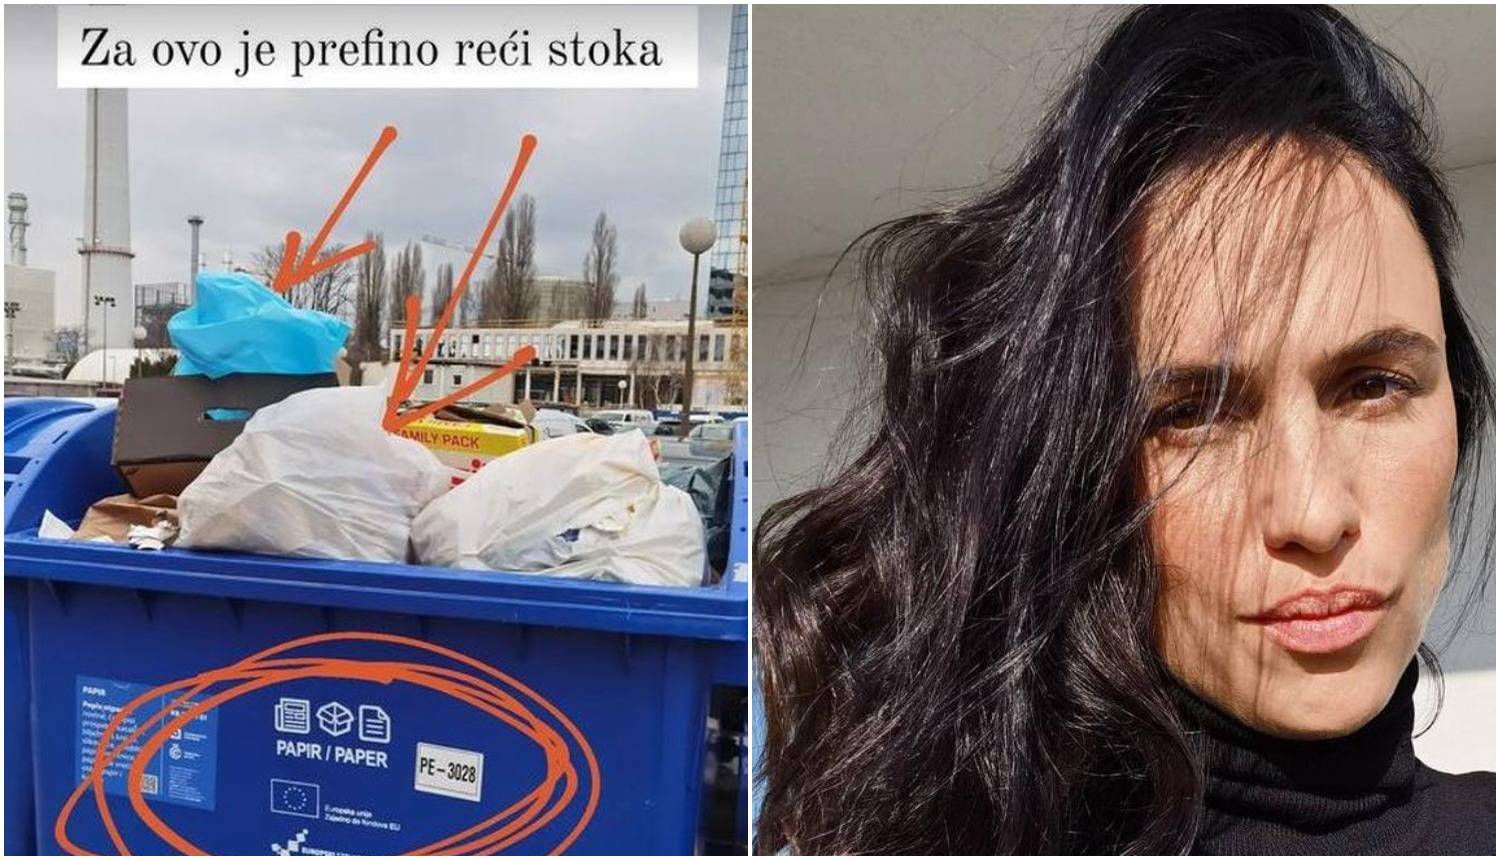 Marijana Mikulić požalila se na neodgovornost ljudi u Zagrebu: 'Za ovo je prefino reći stoka'